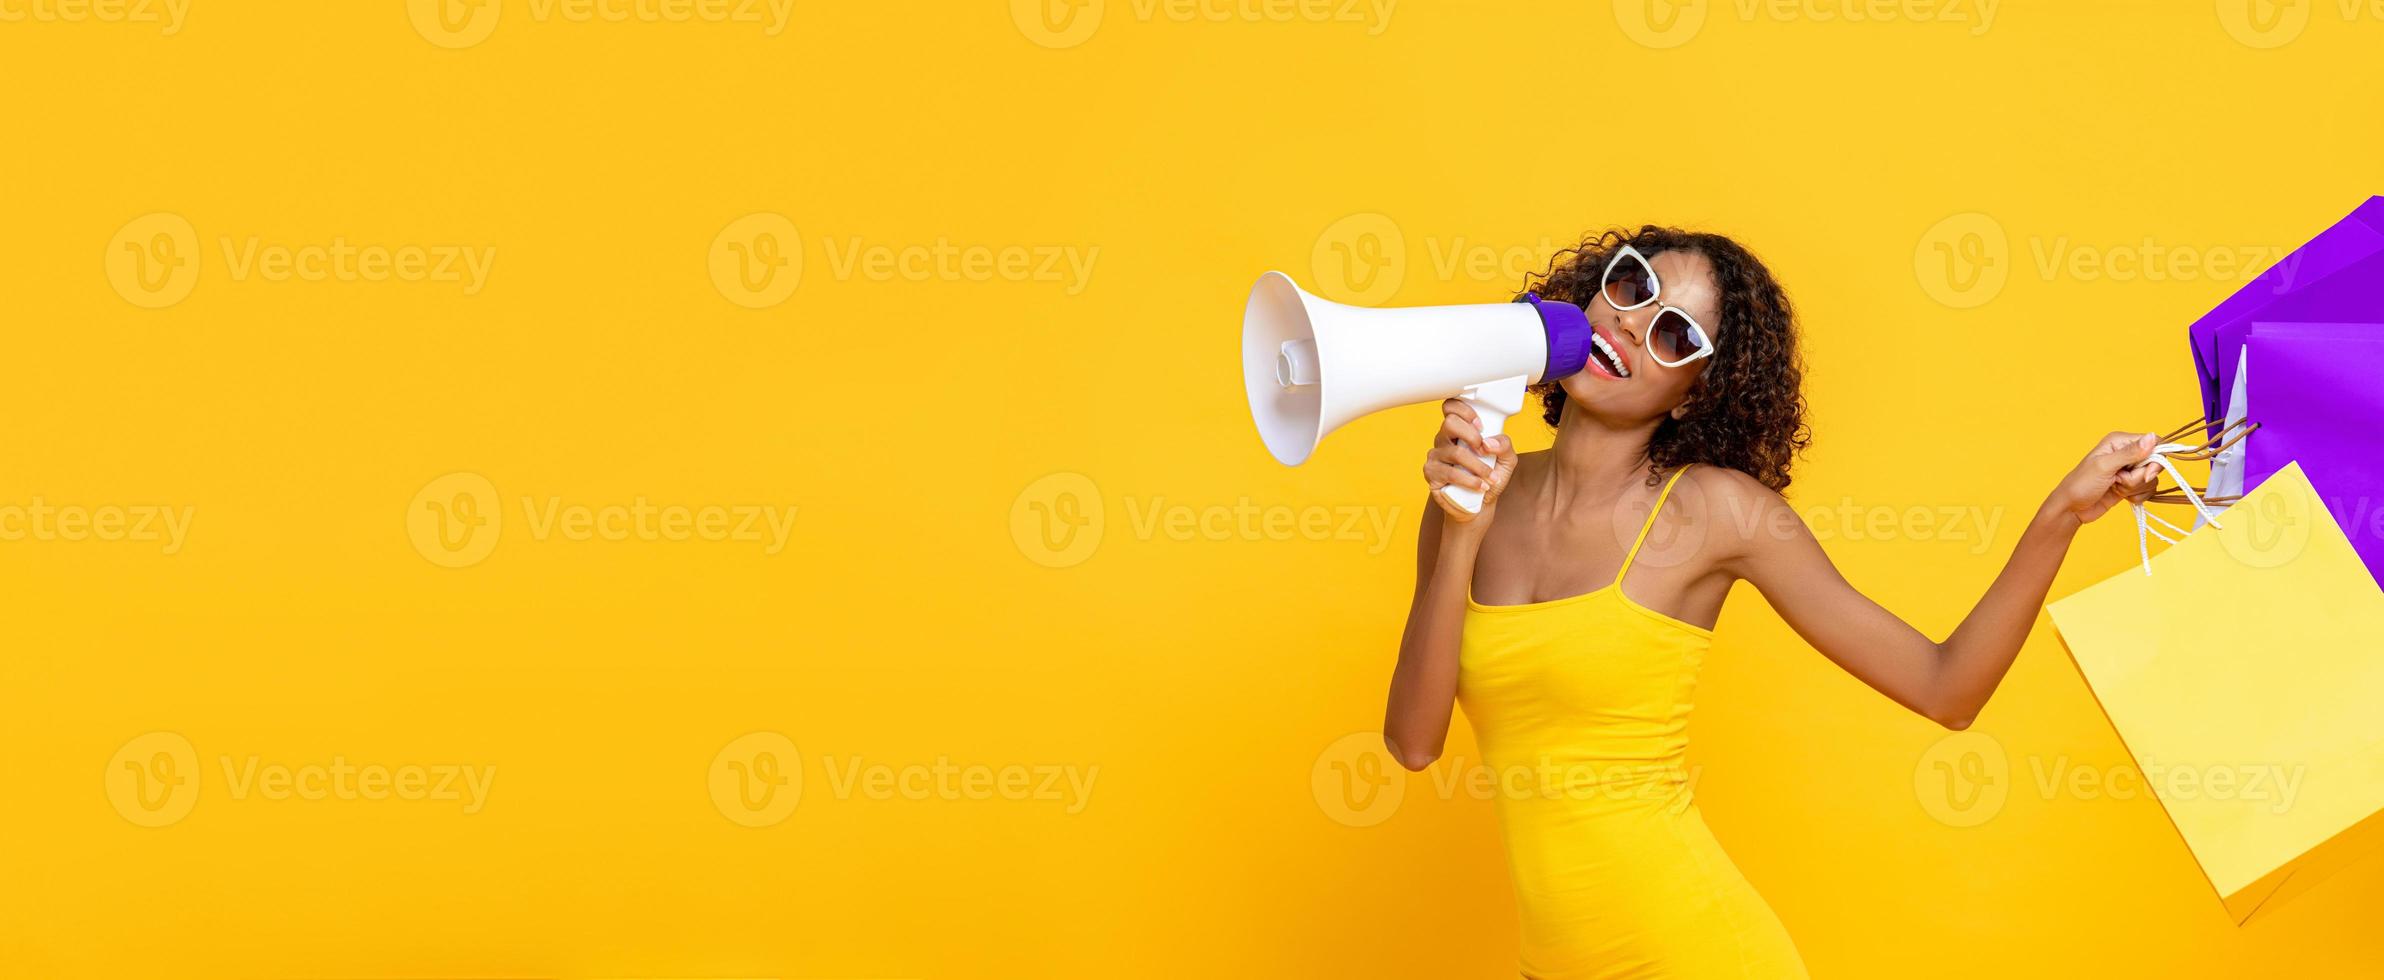 mulher bonita feliz com sacolas de compras e megafone em fundo de banner amarelo colorido isolado para conceitos de venda e desconto foto